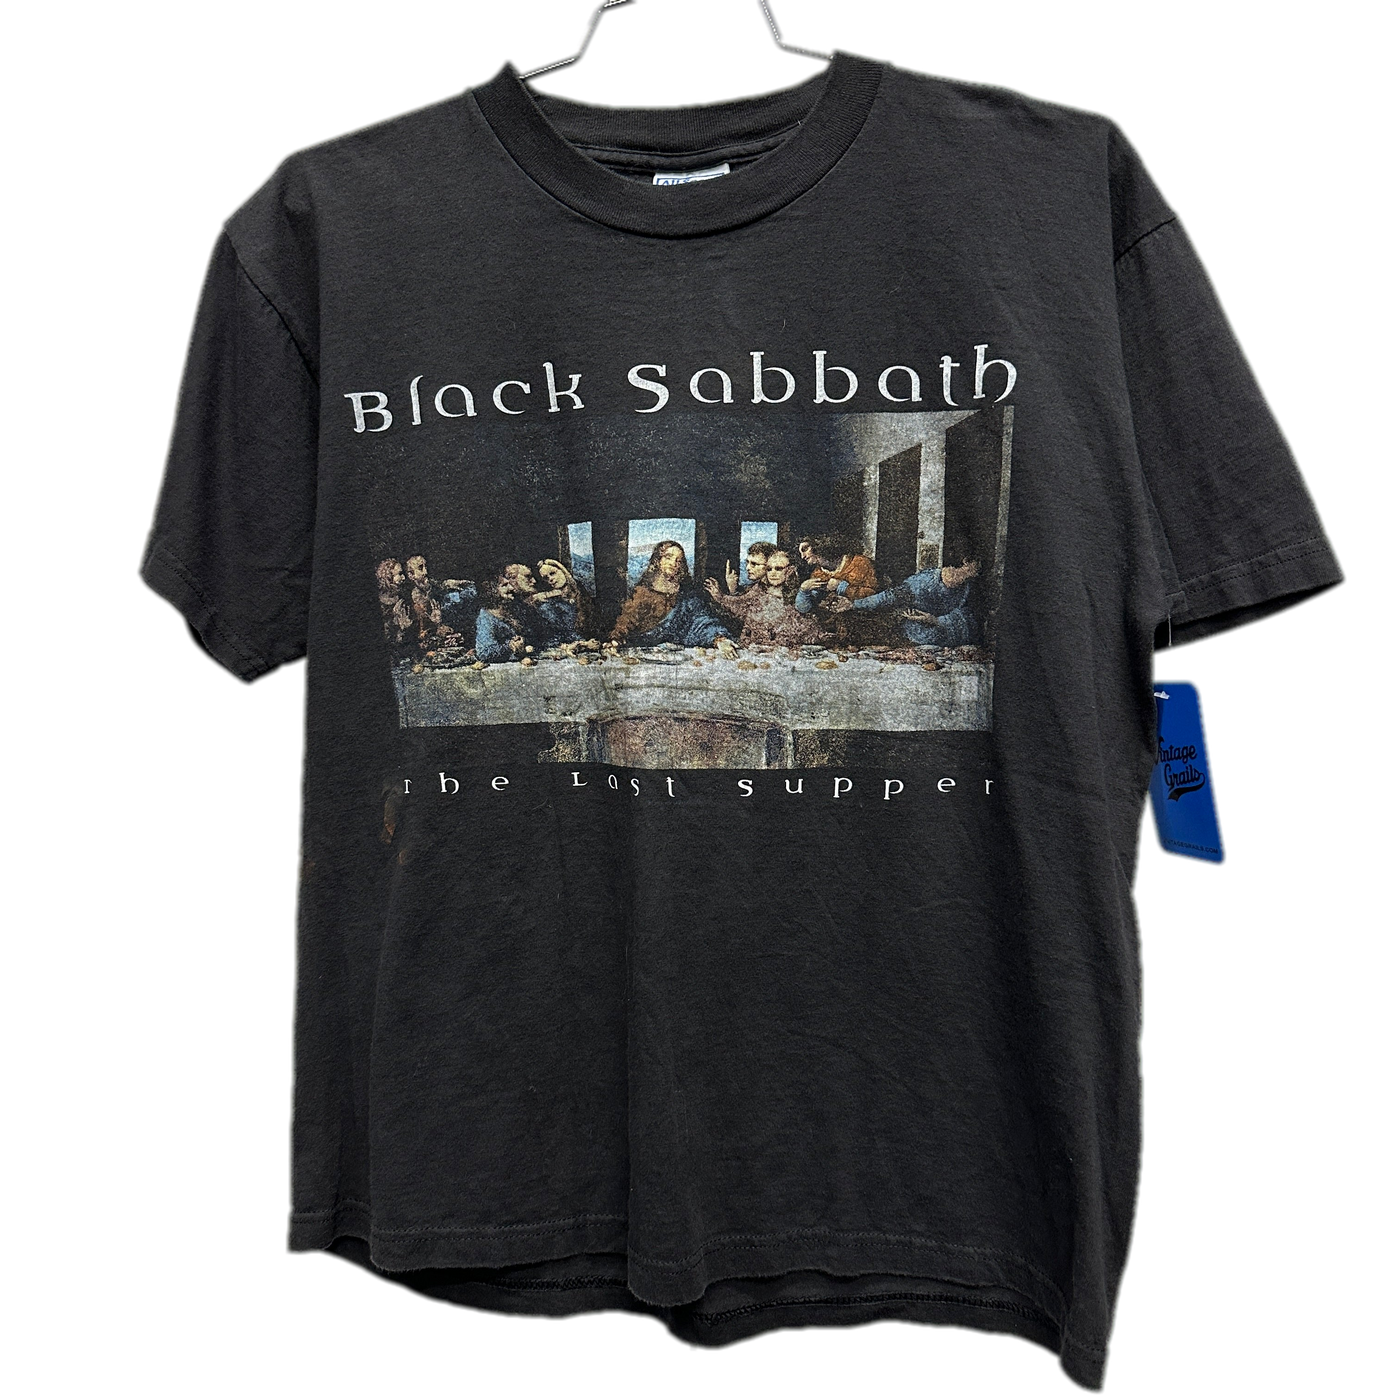 '99 Black Sabbath "The Last Supper" Black Music T-shirt sz L